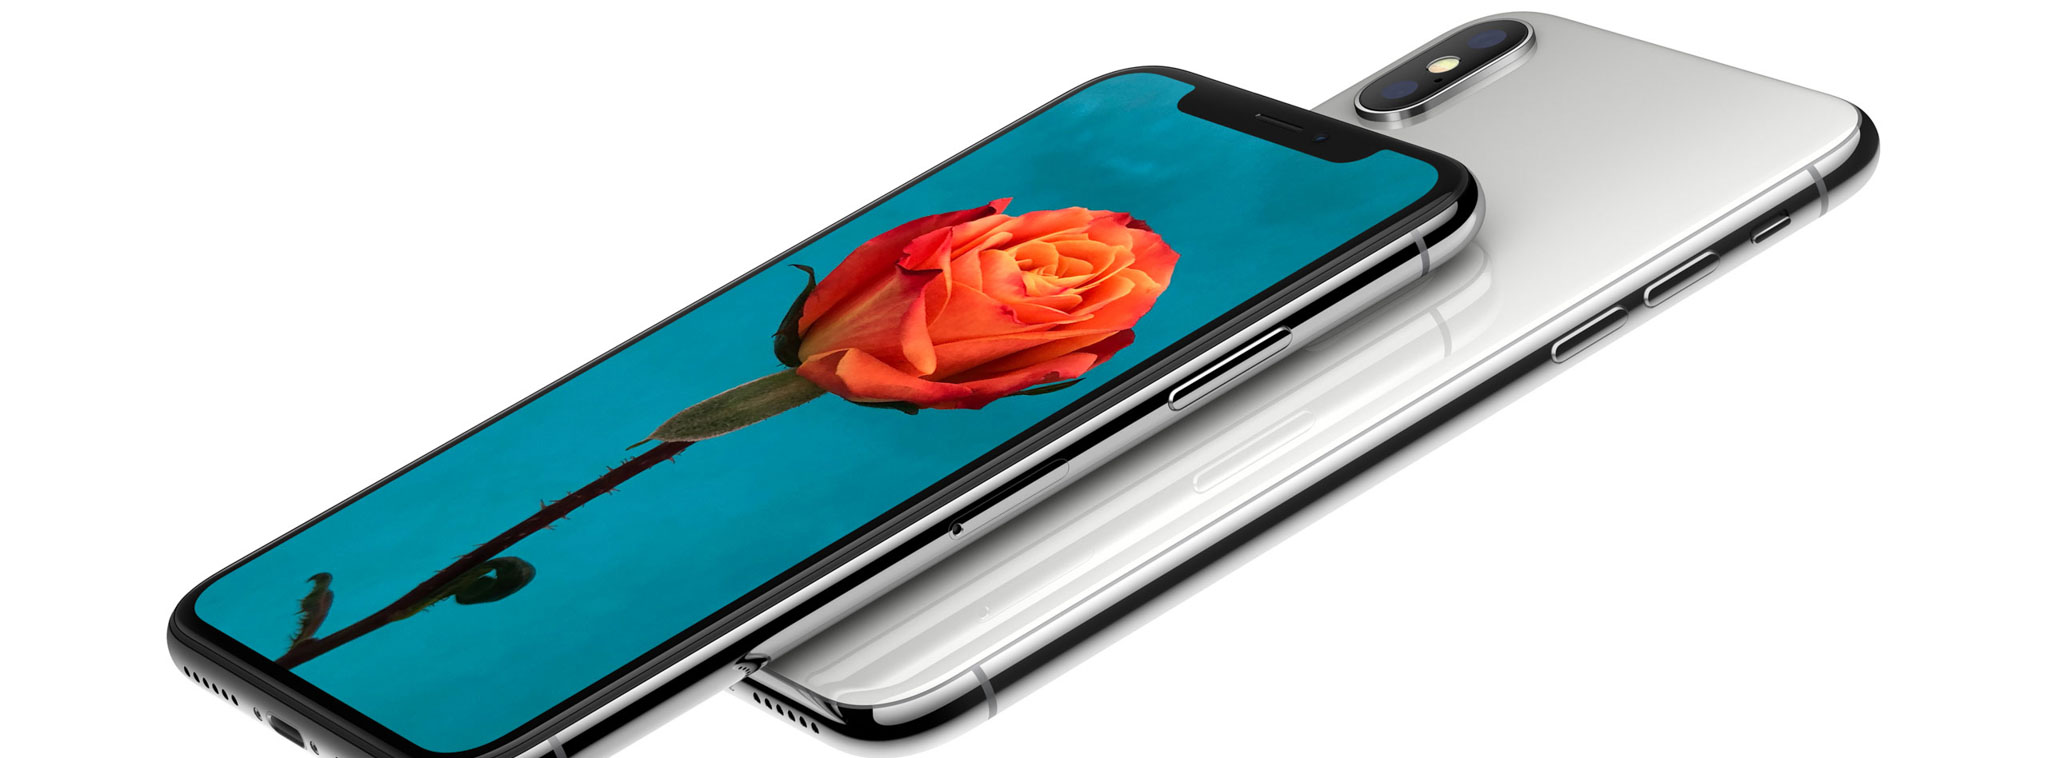 Apple giảm tốc độ nhập linh kiện iPhone X, thăm dò tình hình đặt hàng